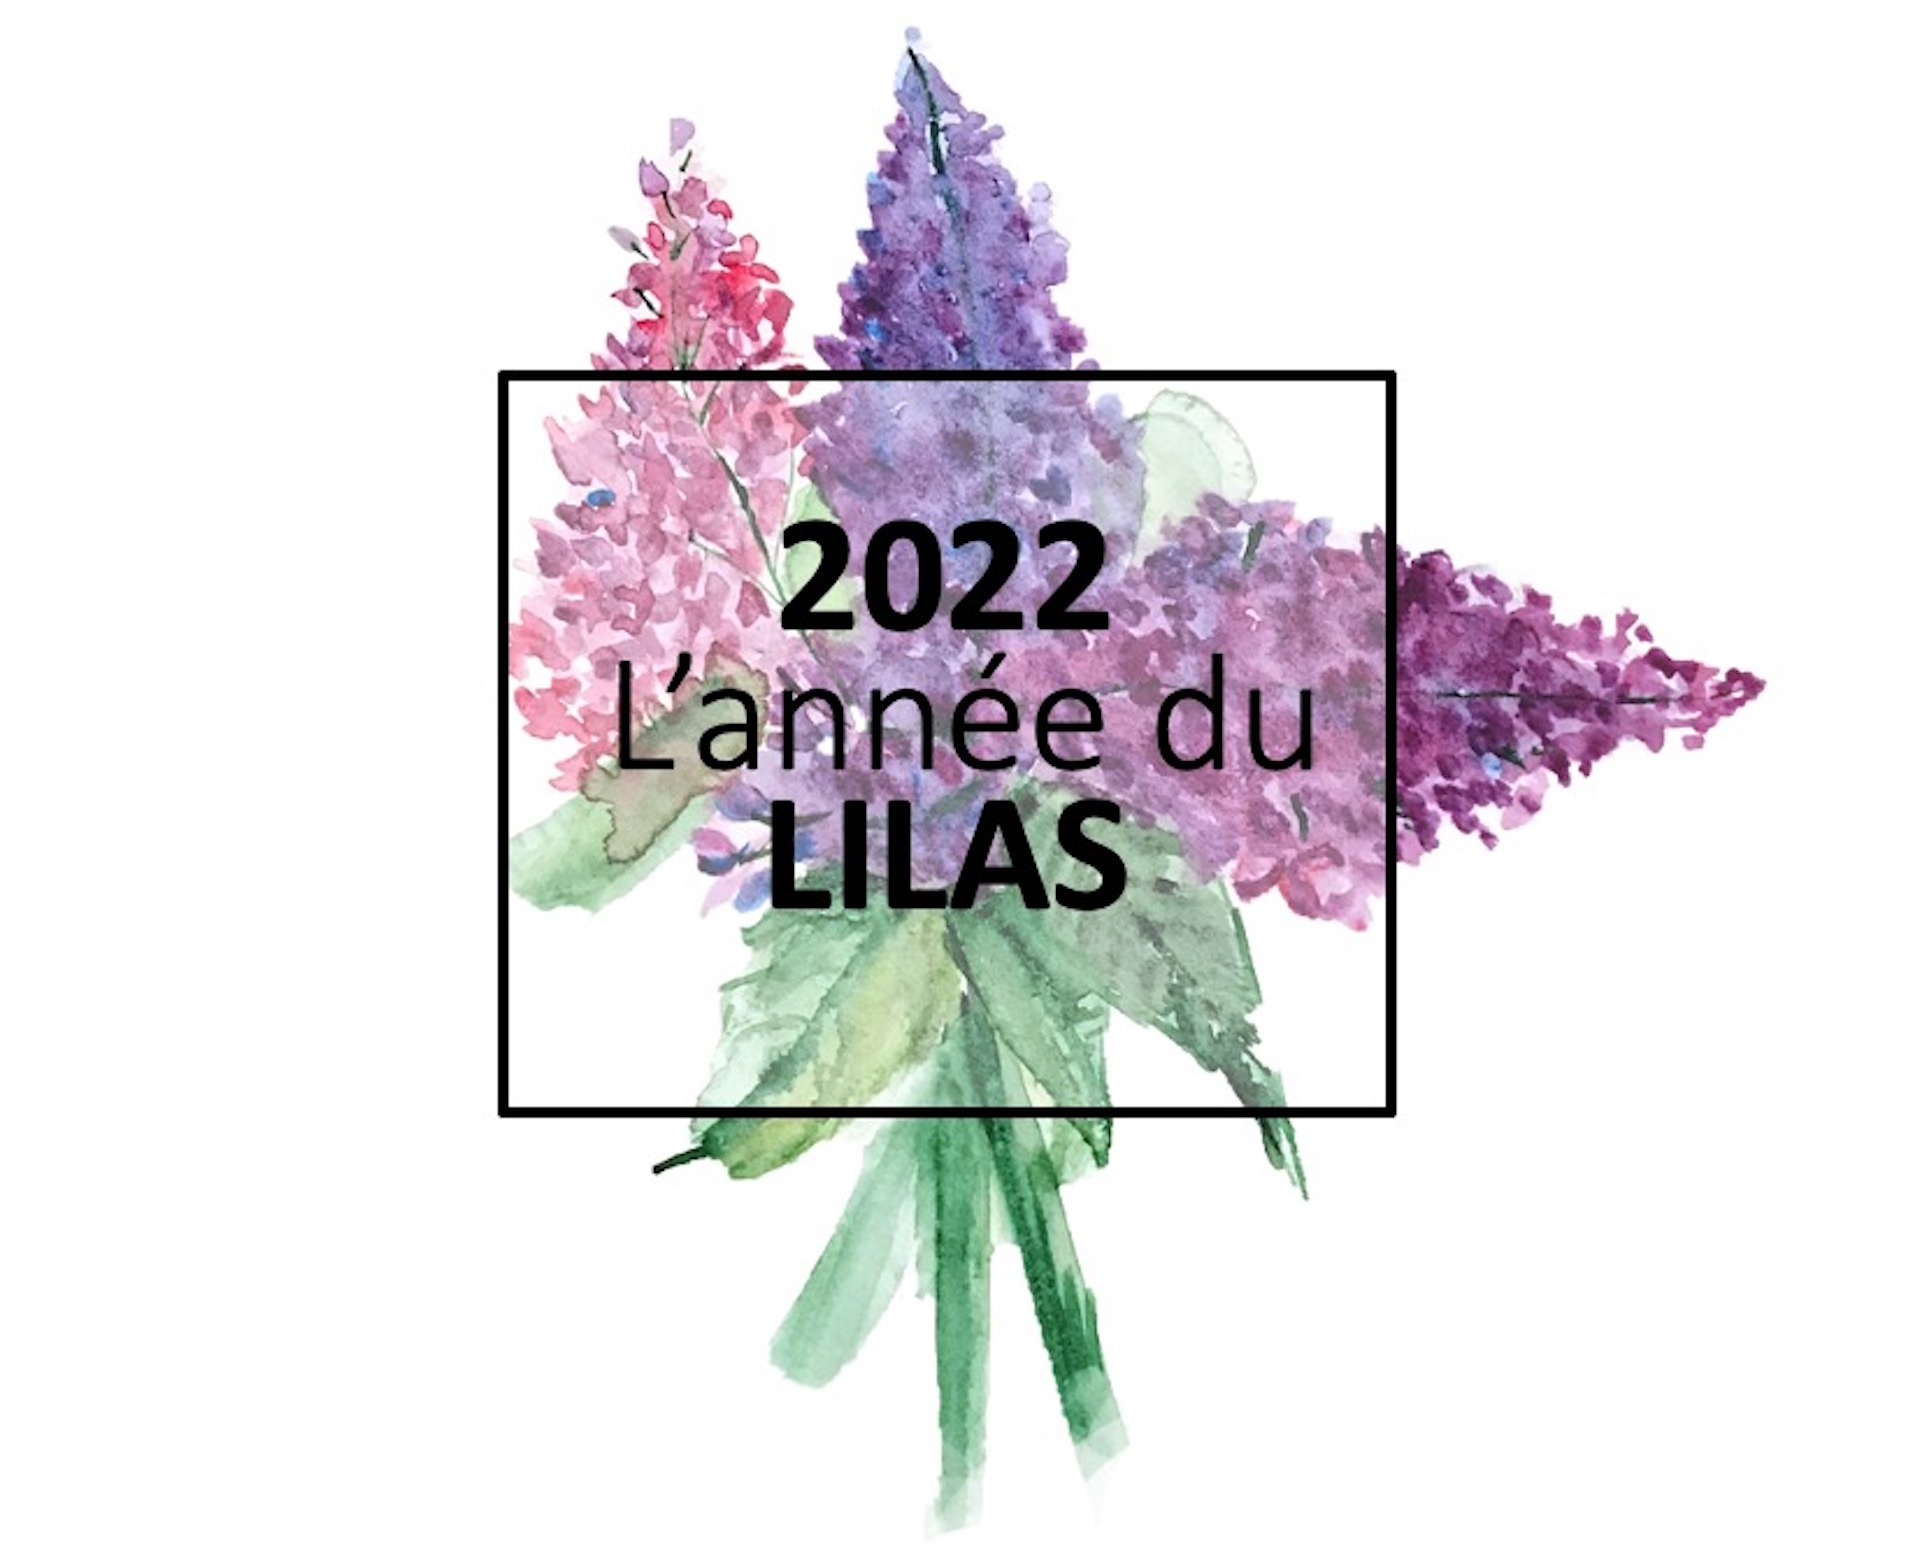 Aquarelle de fleurs de lilas marquée 2022, année du lilas.